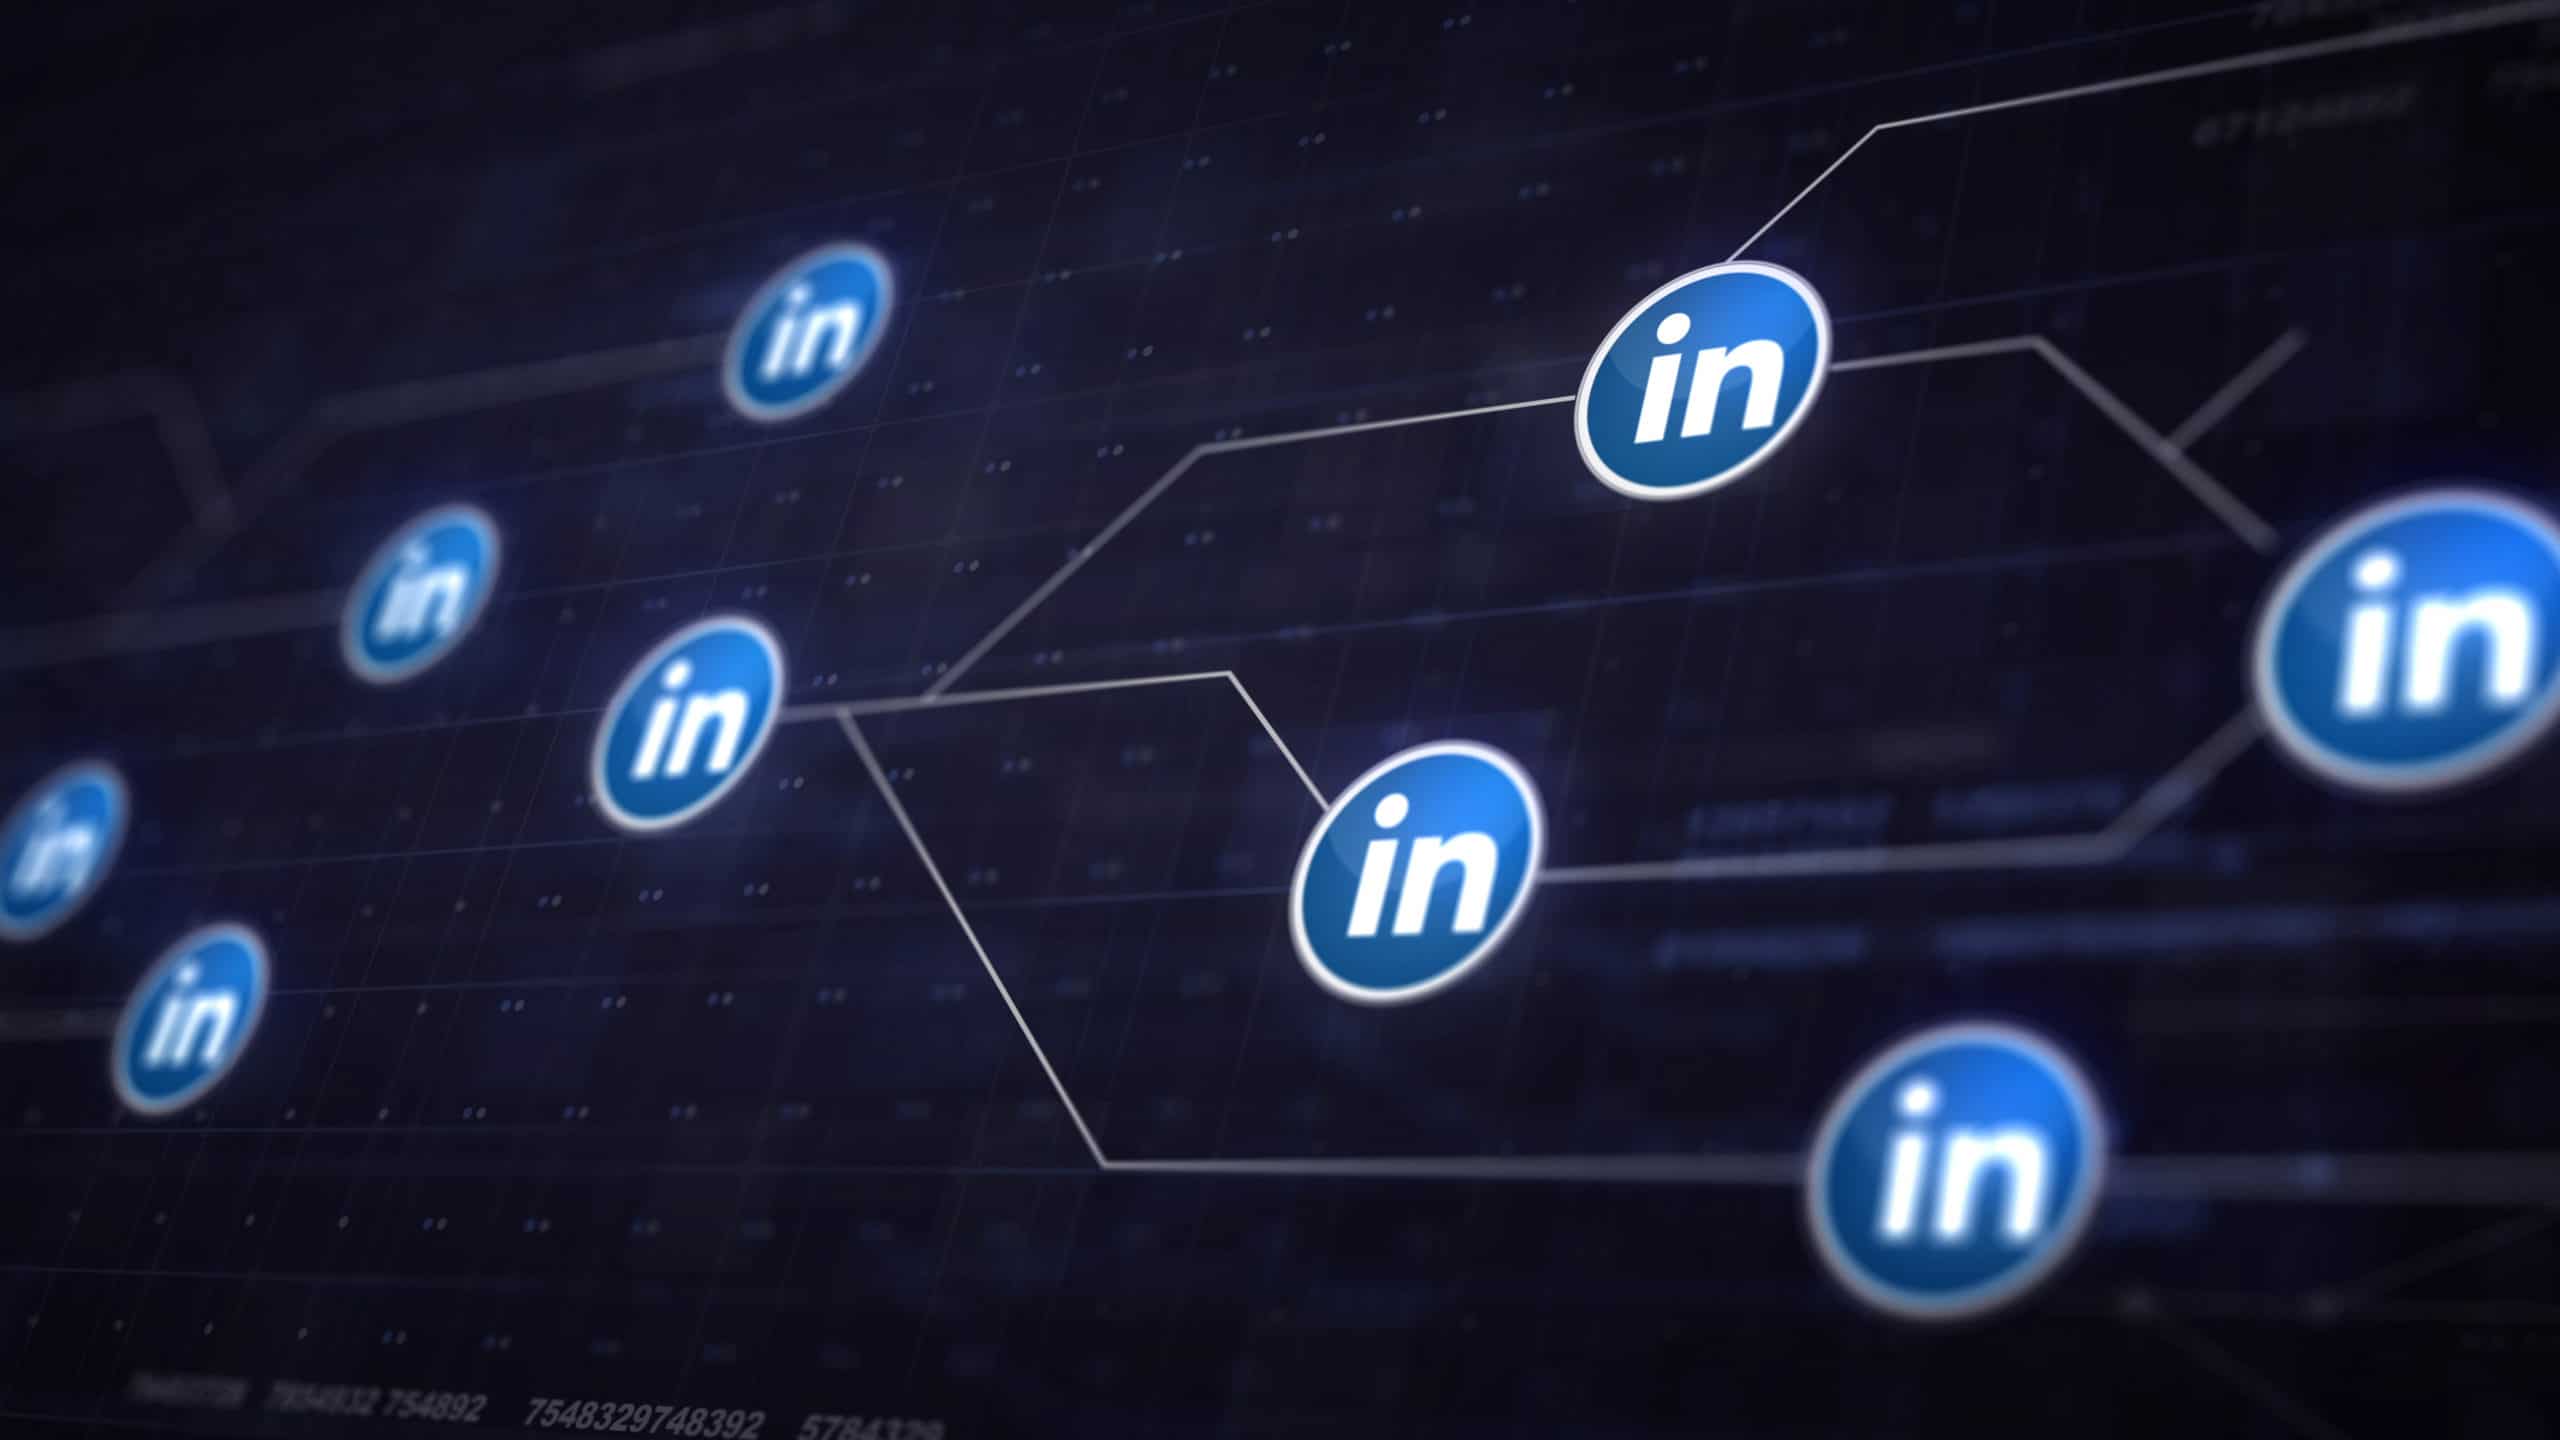 LinkedIn adiciona nova guia “Produtos” nas páginas da empresa para destacar produtos específicos 1